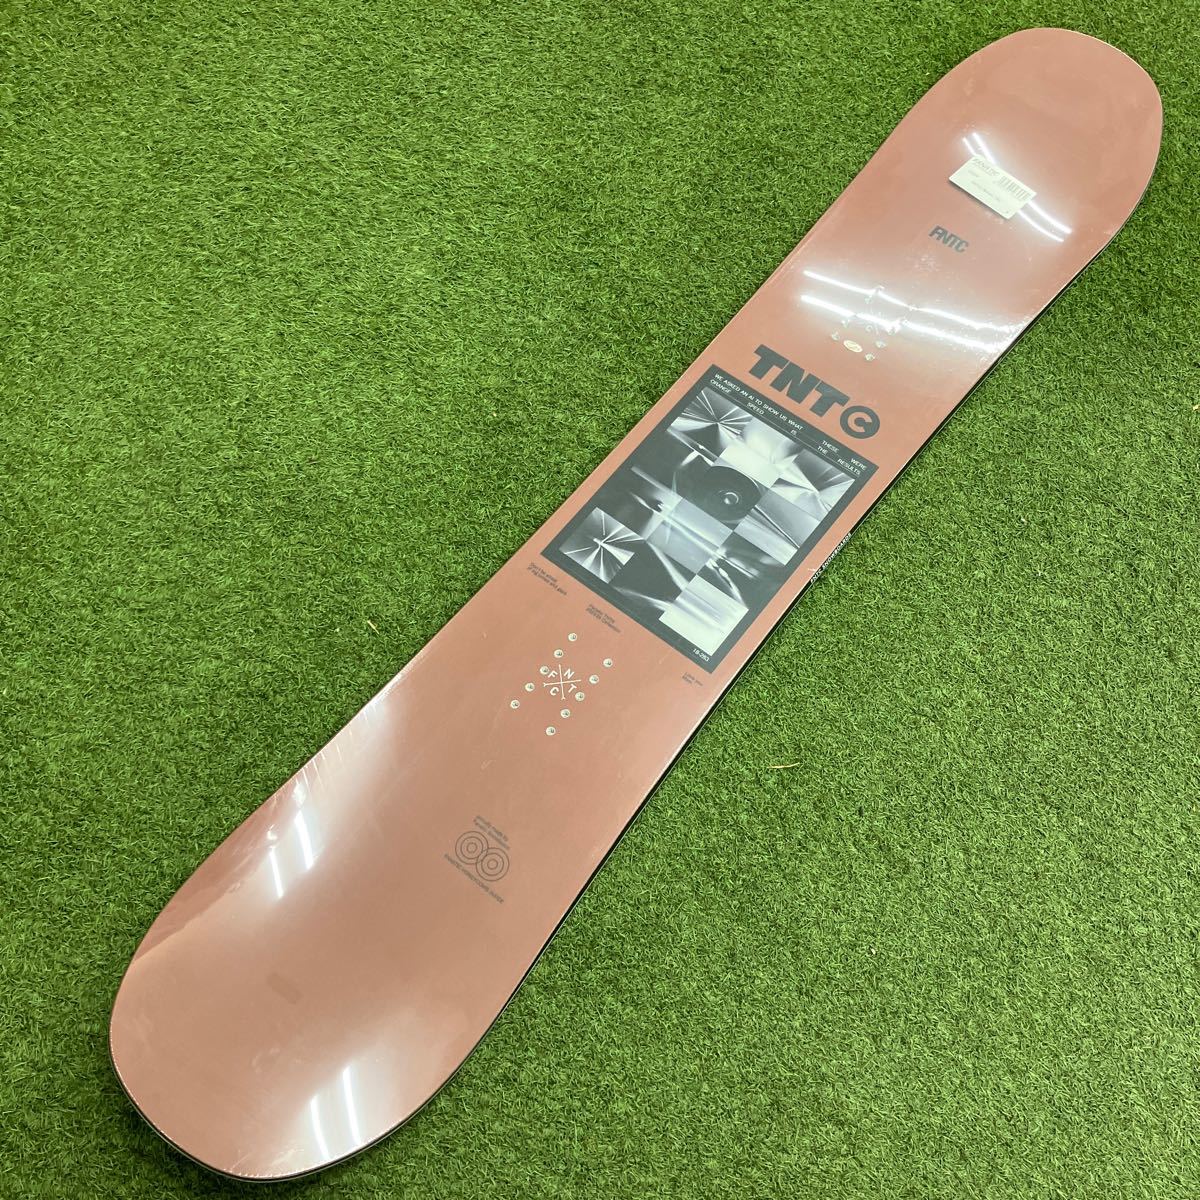  new goods unused snowboard board FNTC TNT C Brown 143 23-24 model glato lilac ntoli